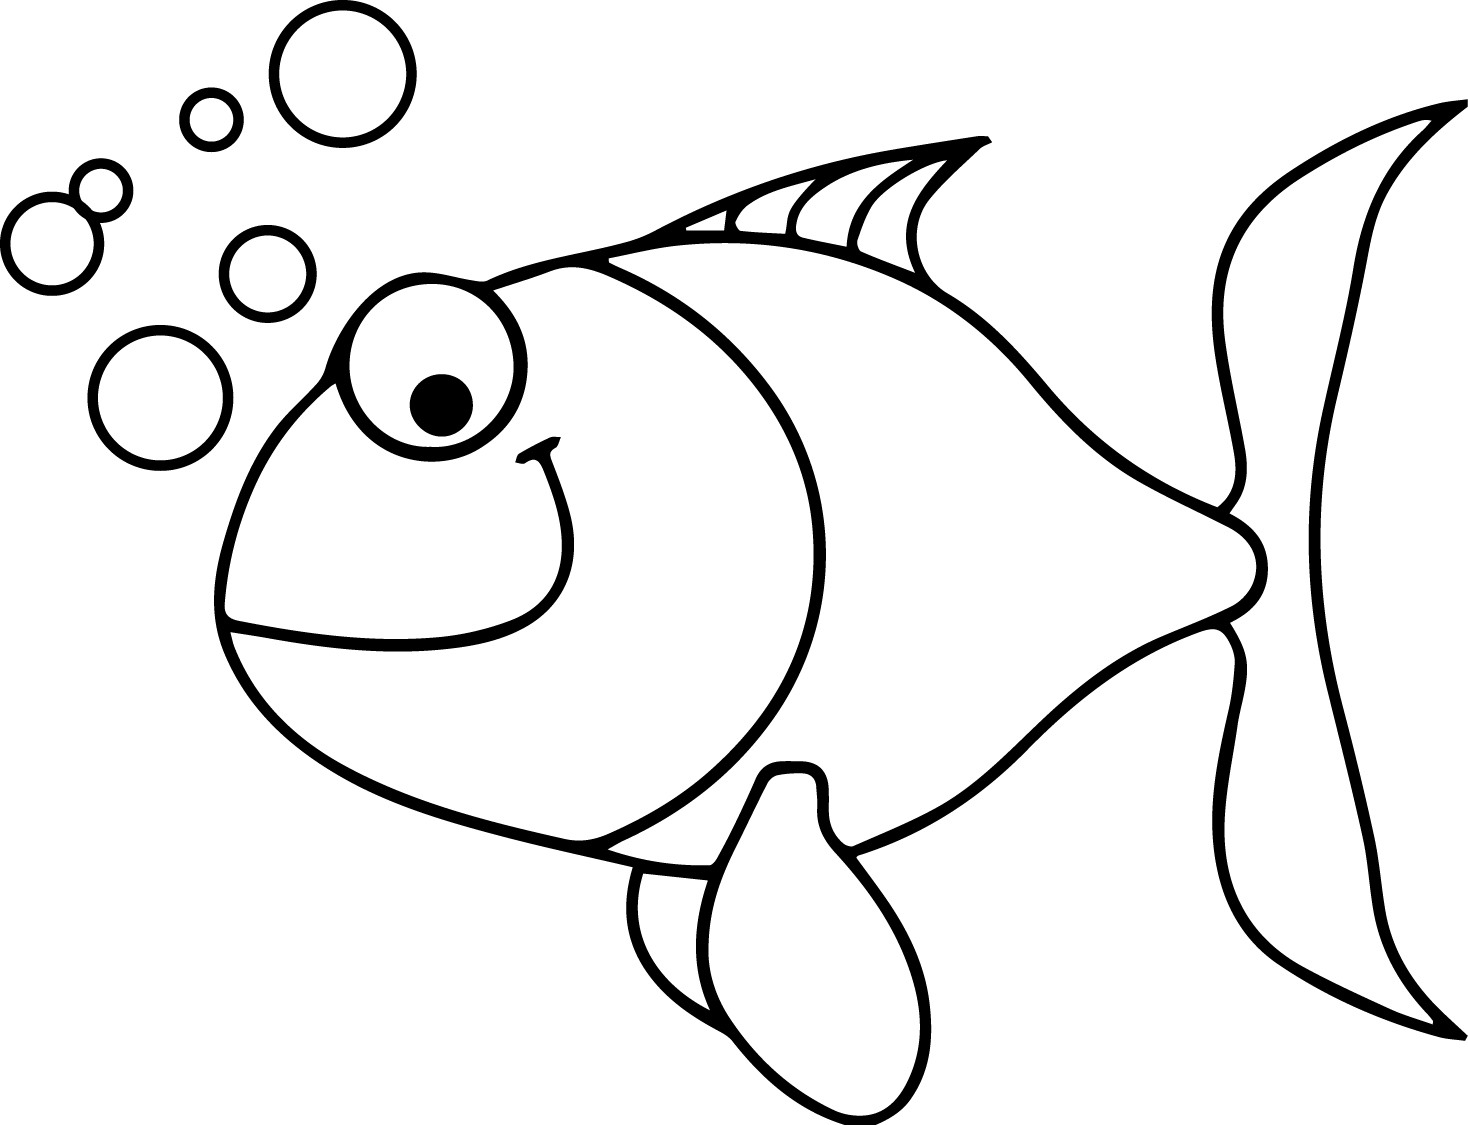 Раскраски рыбки для детей 3 4 лет. Раскраска рыбка. Трафарет "рыбки". Рисунок рыбки для раскрашивания. Трафарет рыбы для рисования.